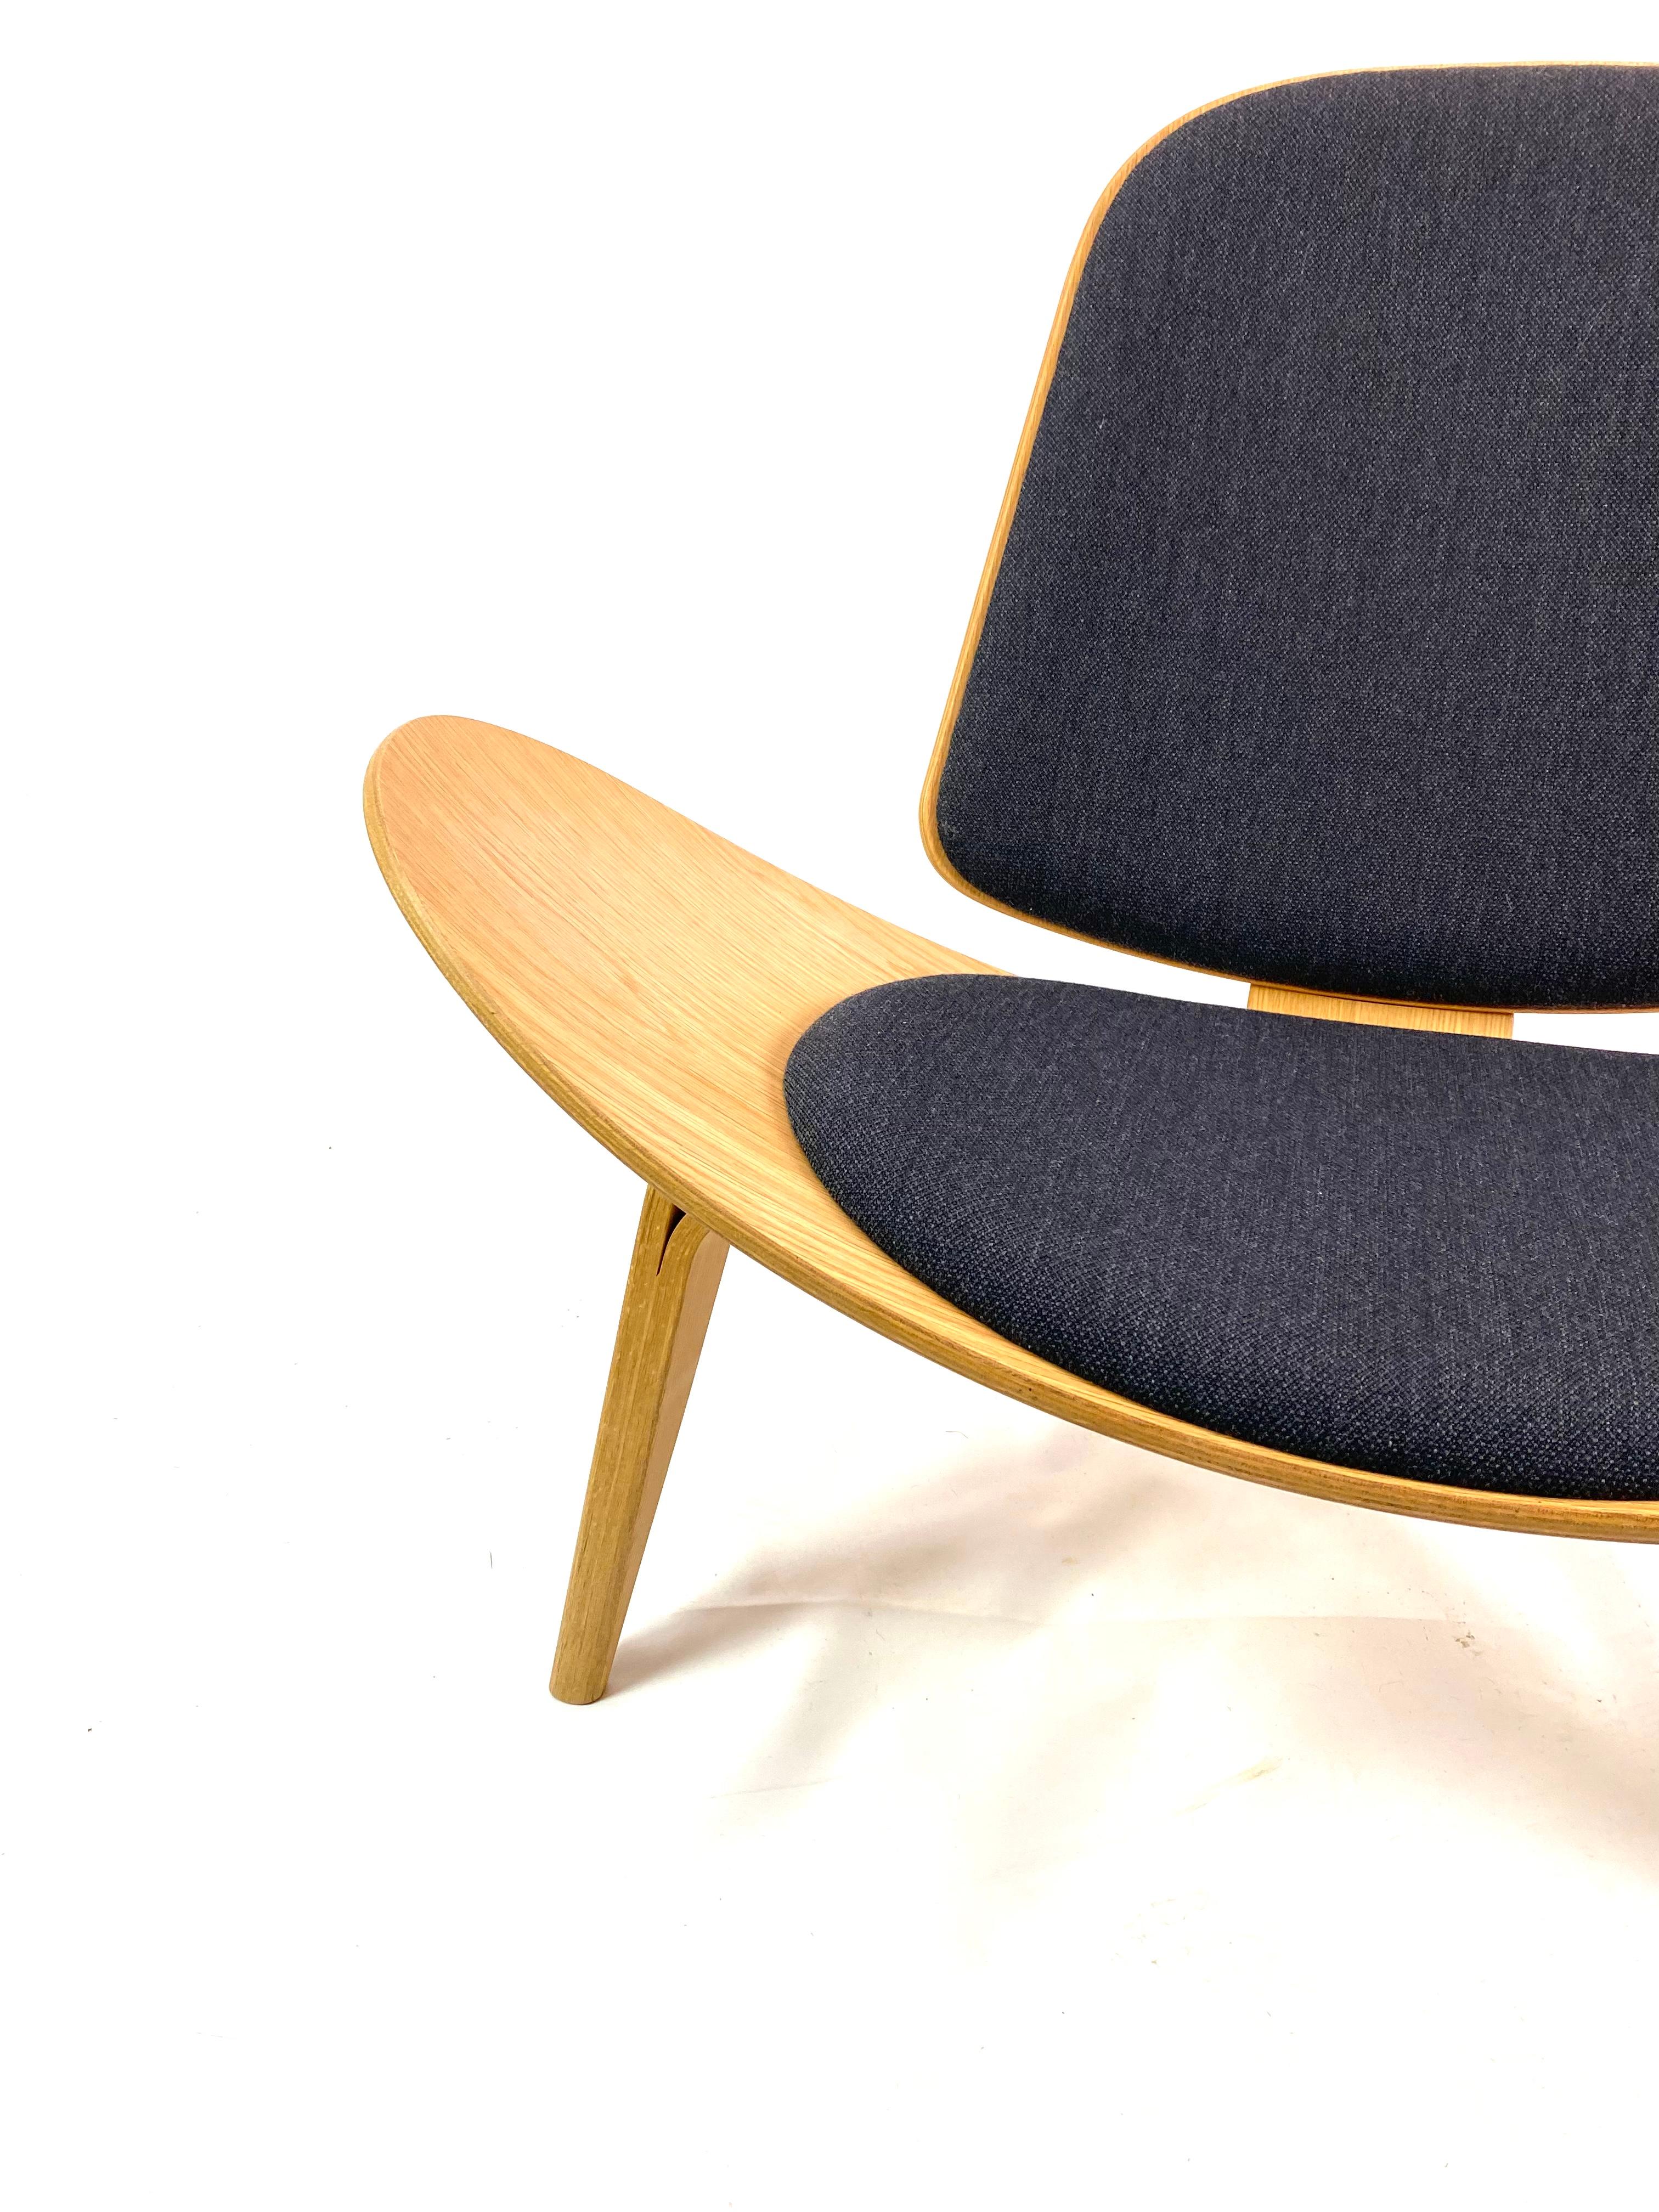 Danish Vintage Shell Chair by Hans J. Wegner, Designed in 1963